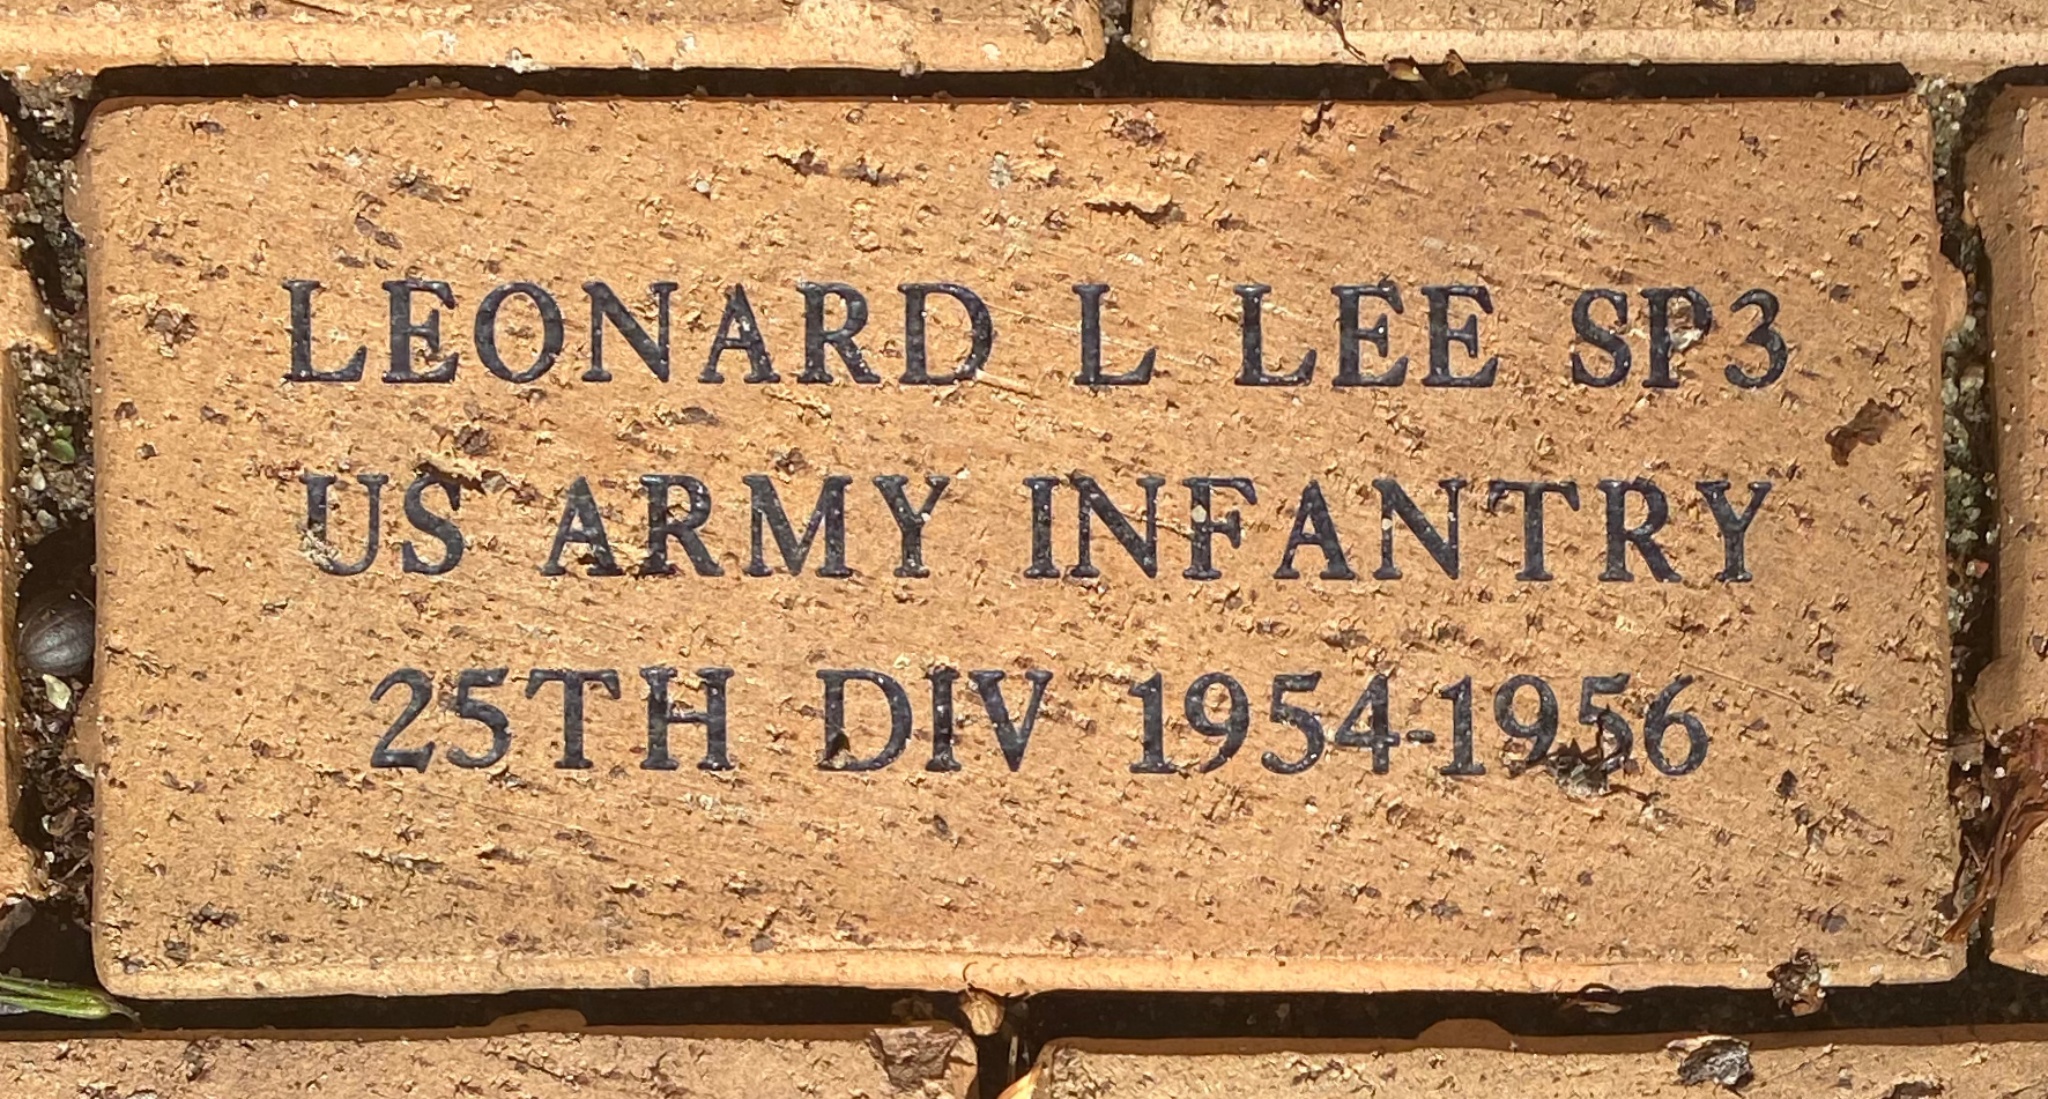 LEONARD L LEE SP3 US ARMY INFANTRY 25TH DIV 1954-1956